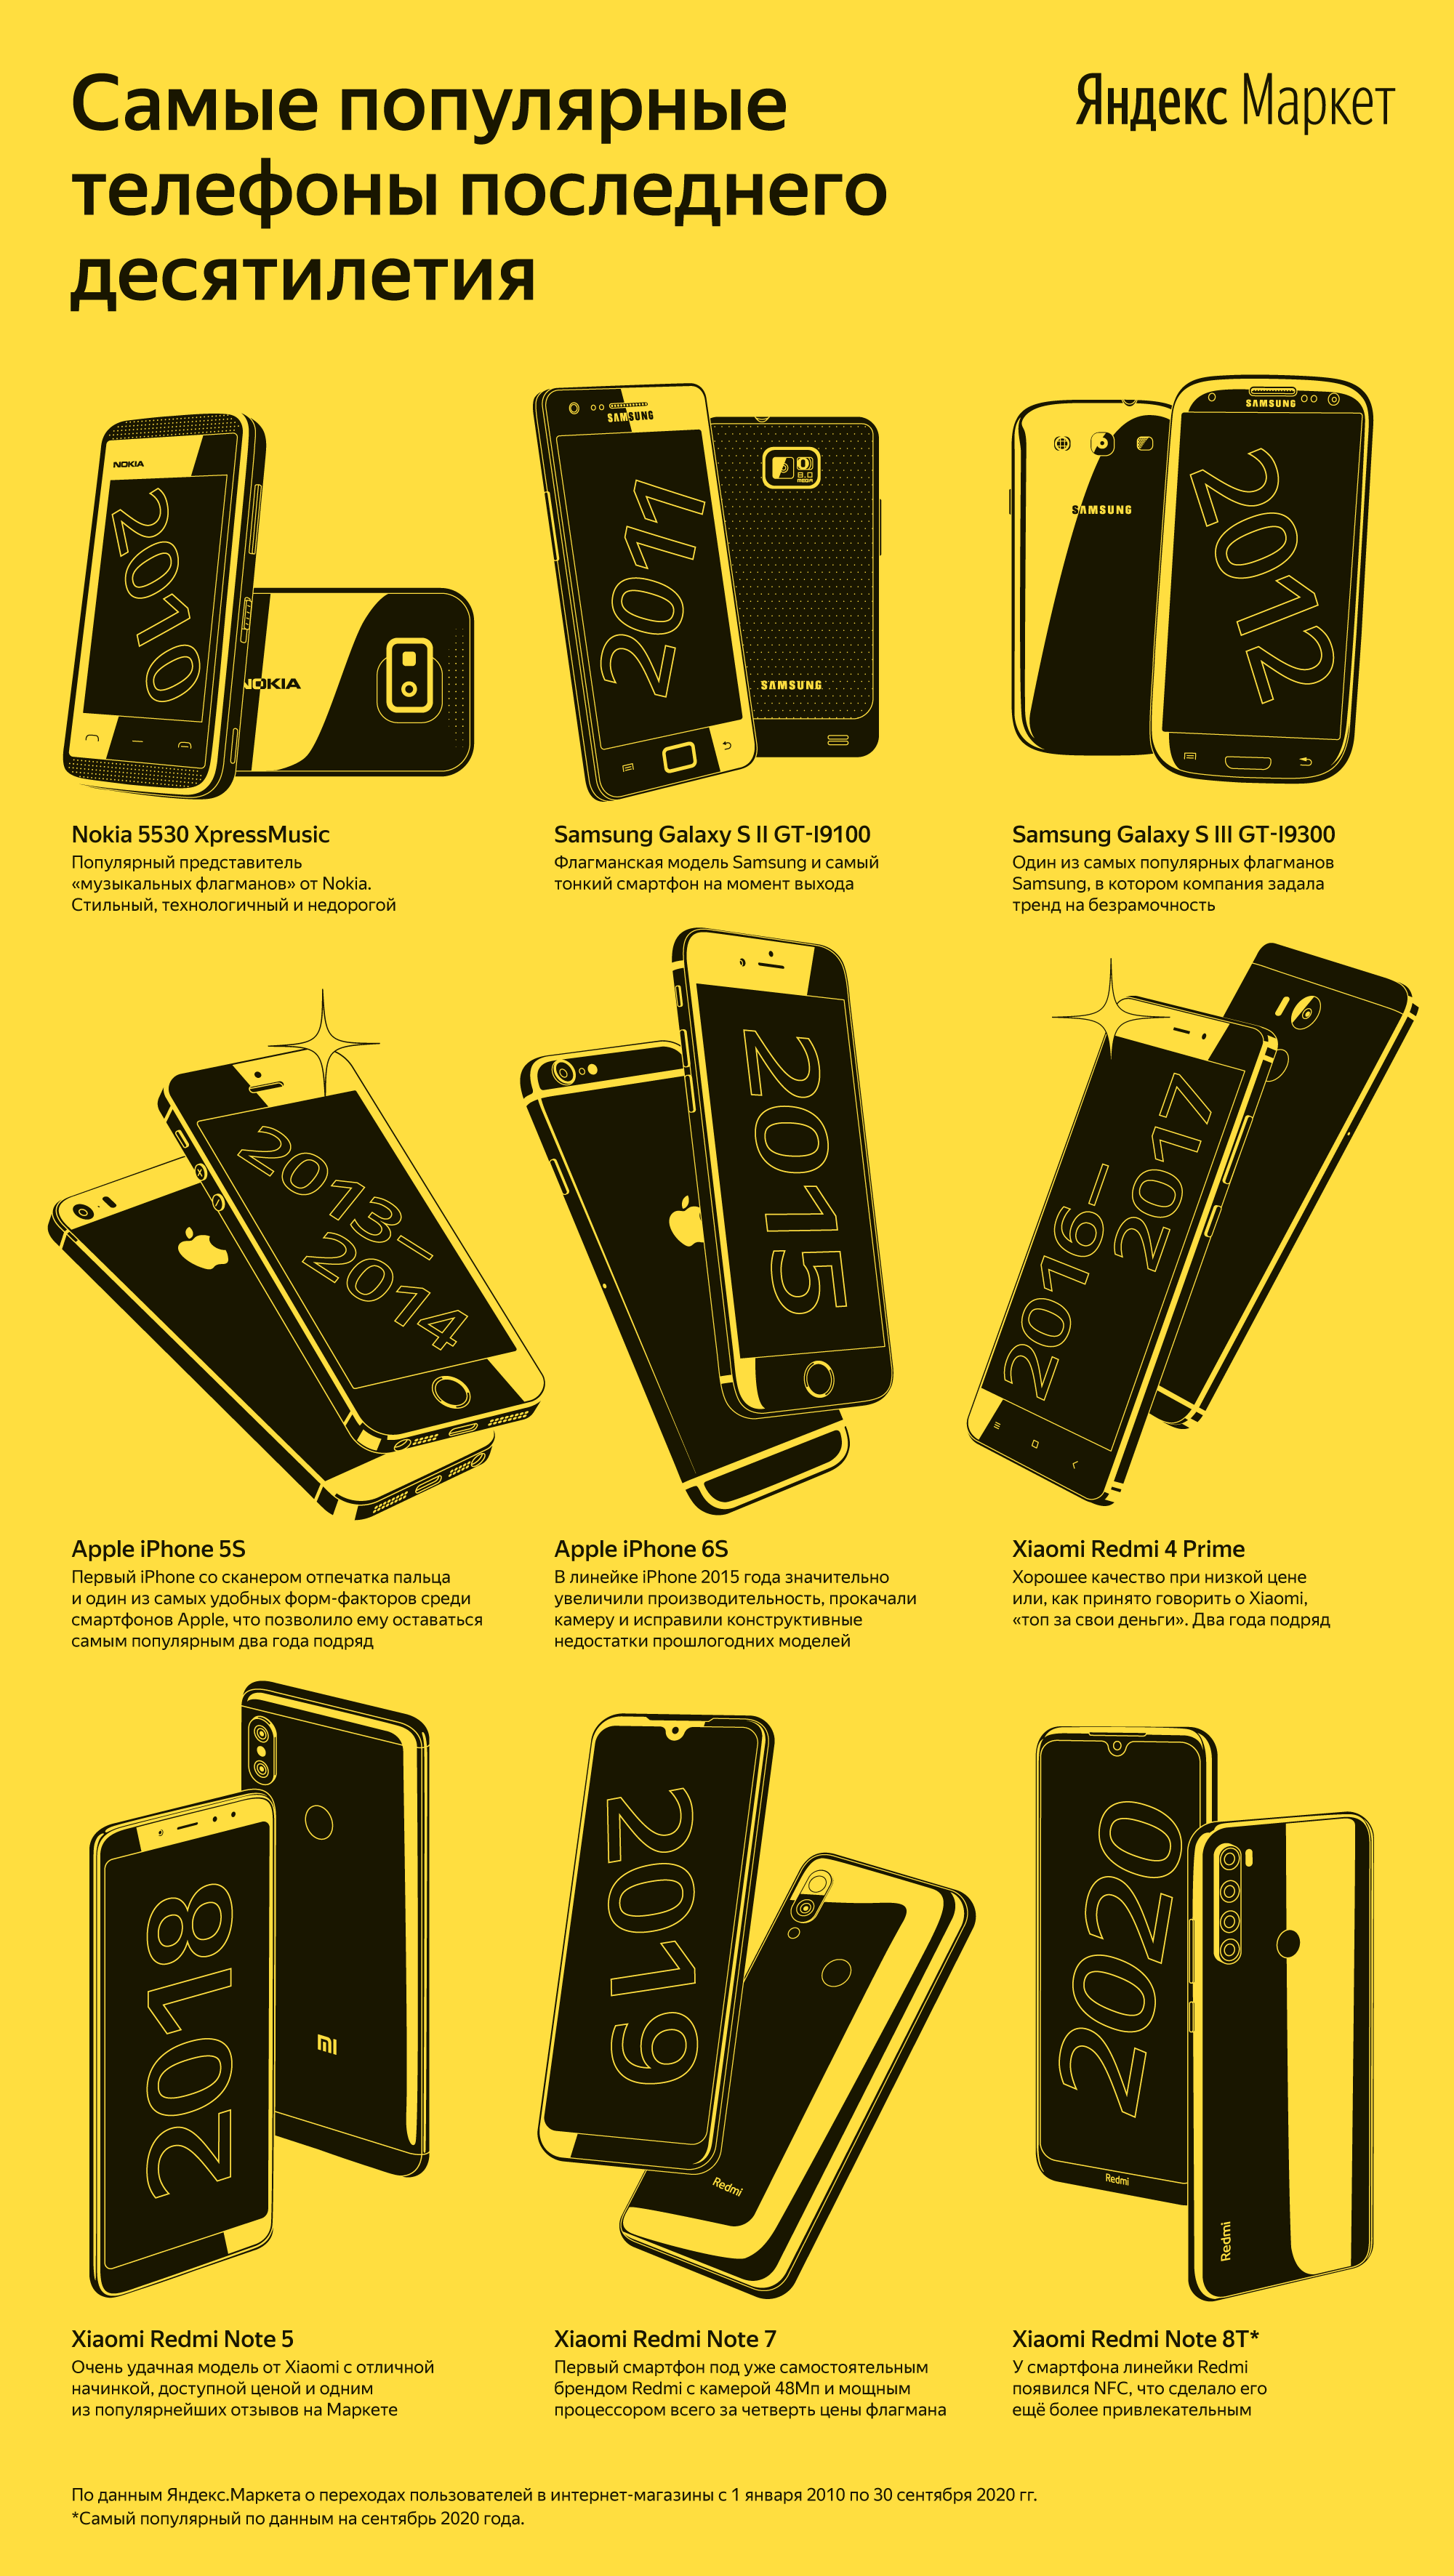 Самые популярные телефоны десятилетия